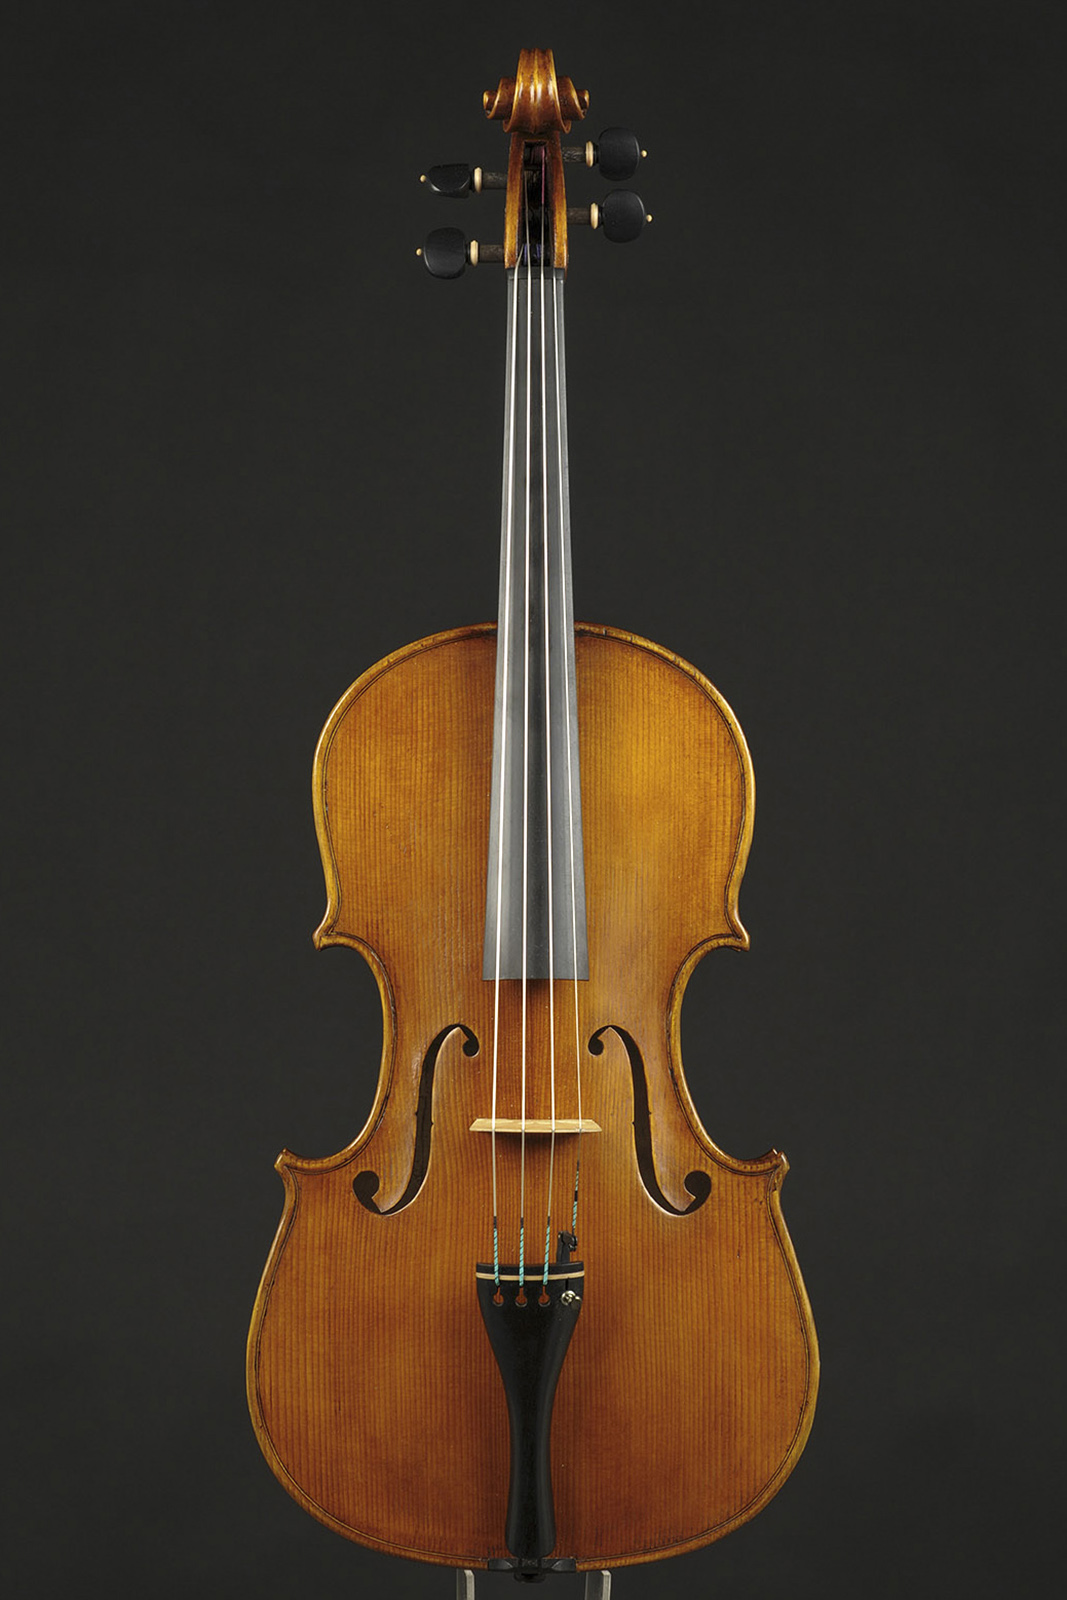 Antonio Stradivari Cremona 1672 “Wien“ cm 42 - Image 1